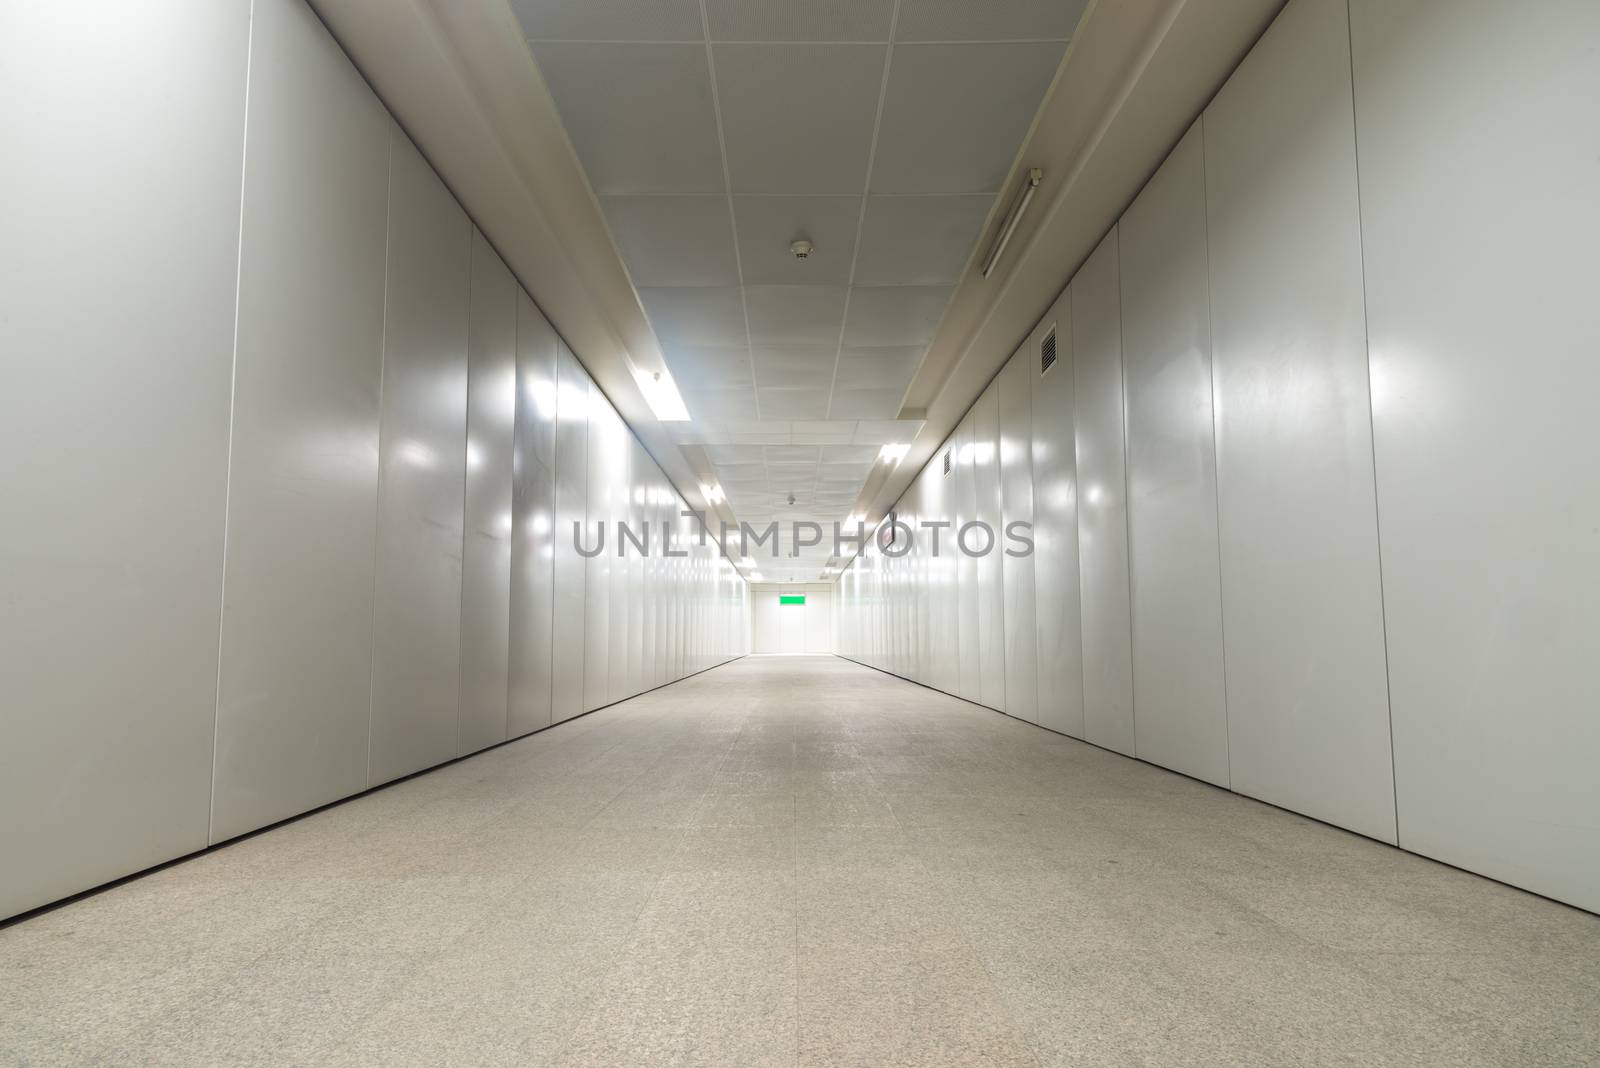 The under ground passage indoor